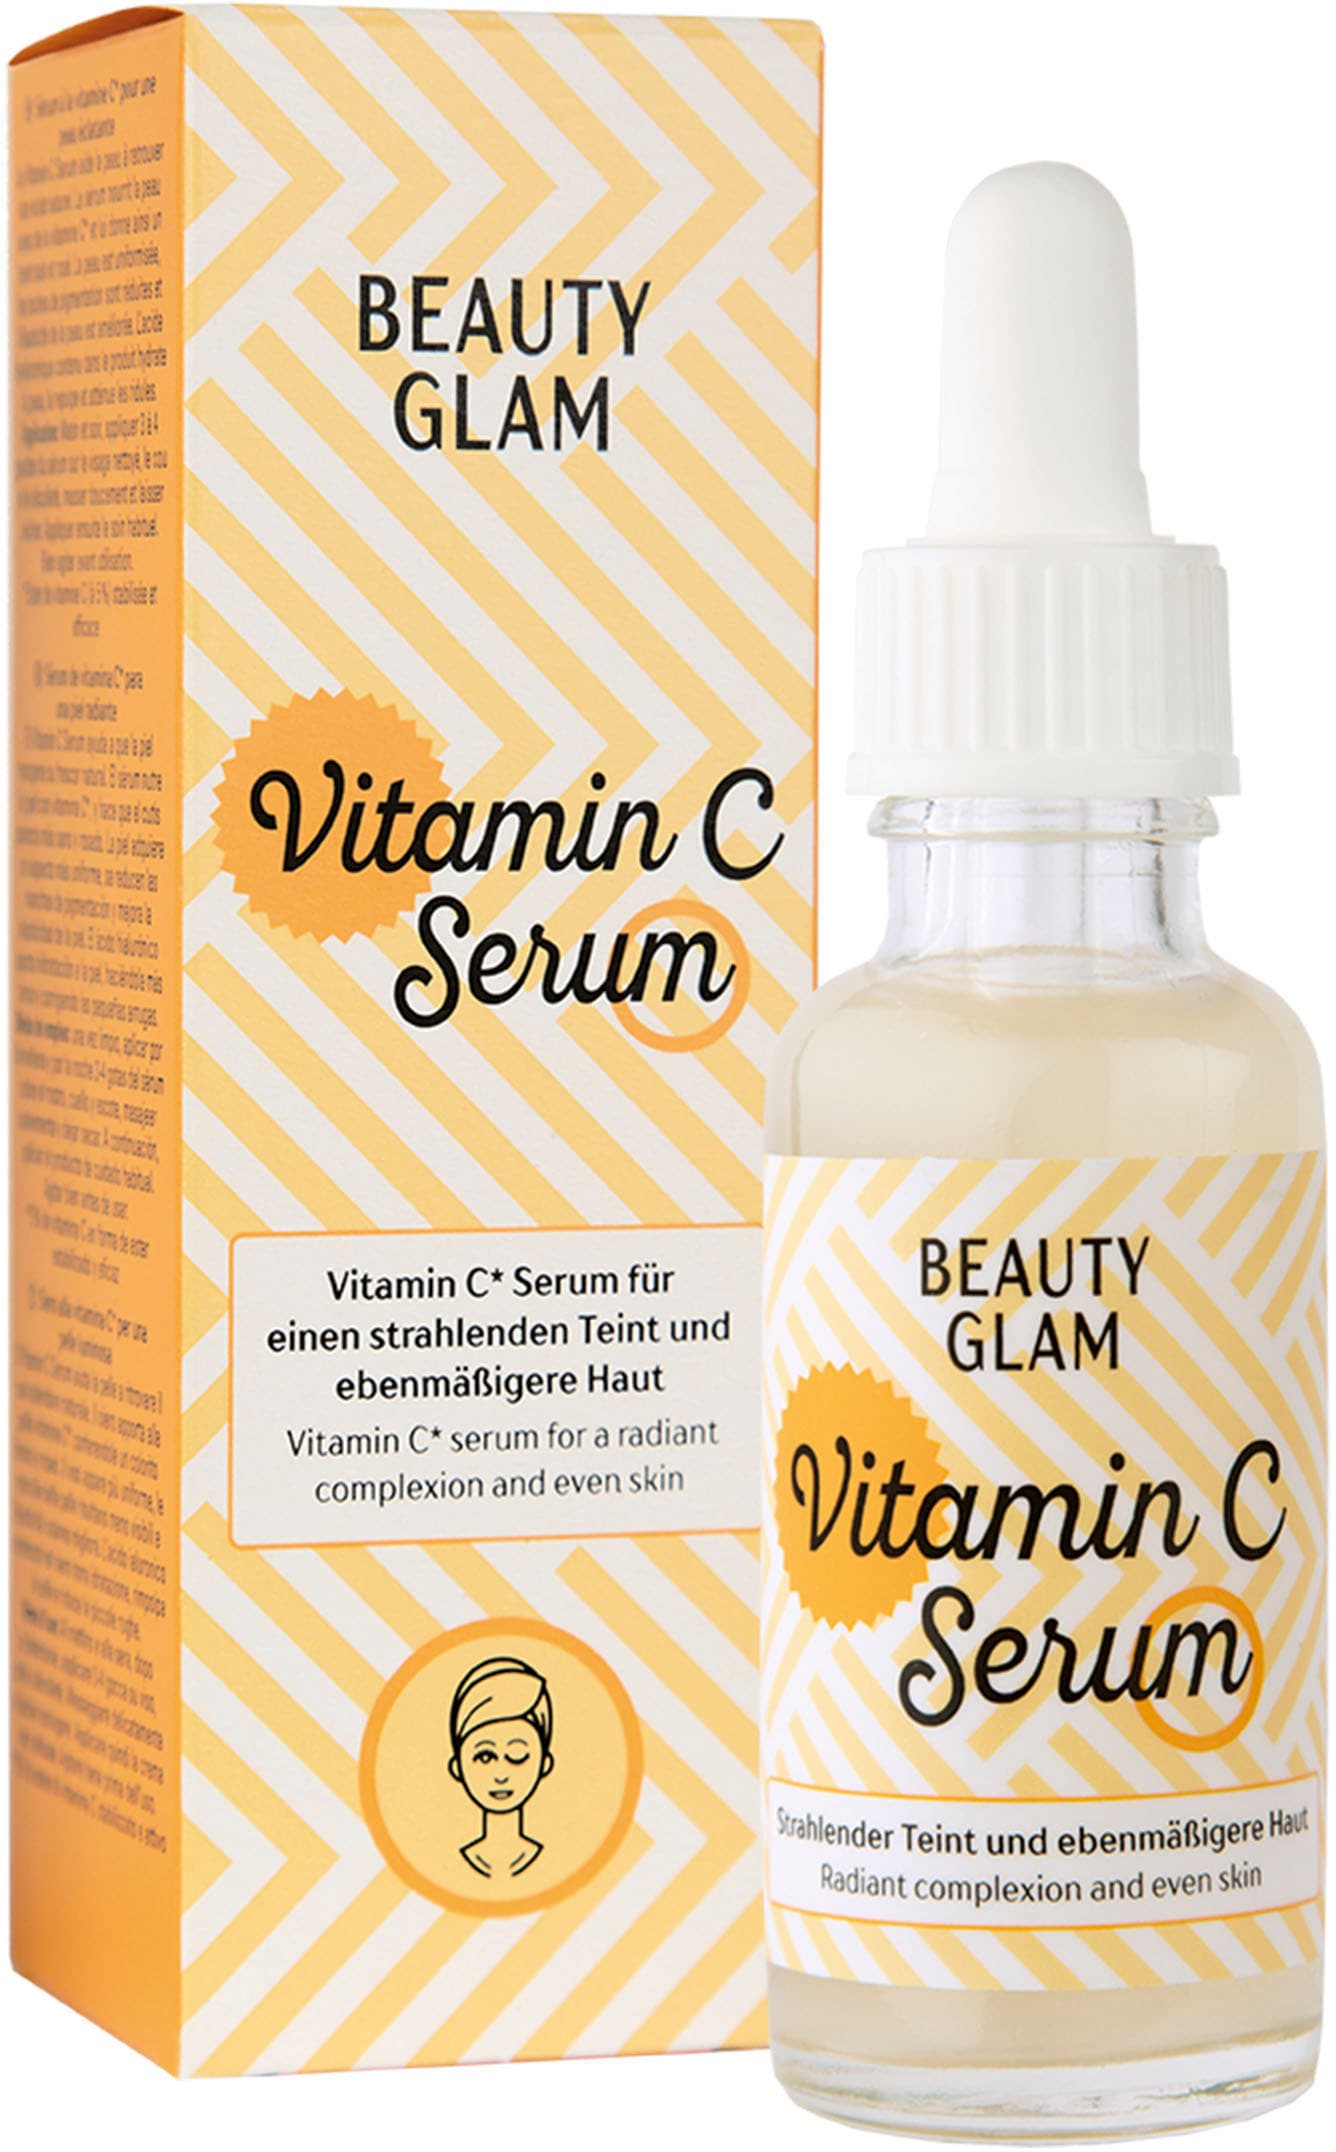 BEAUTY GLAM Vitamin Glam bei »Beauty C Gesichtsserum OTTOversand Serum«